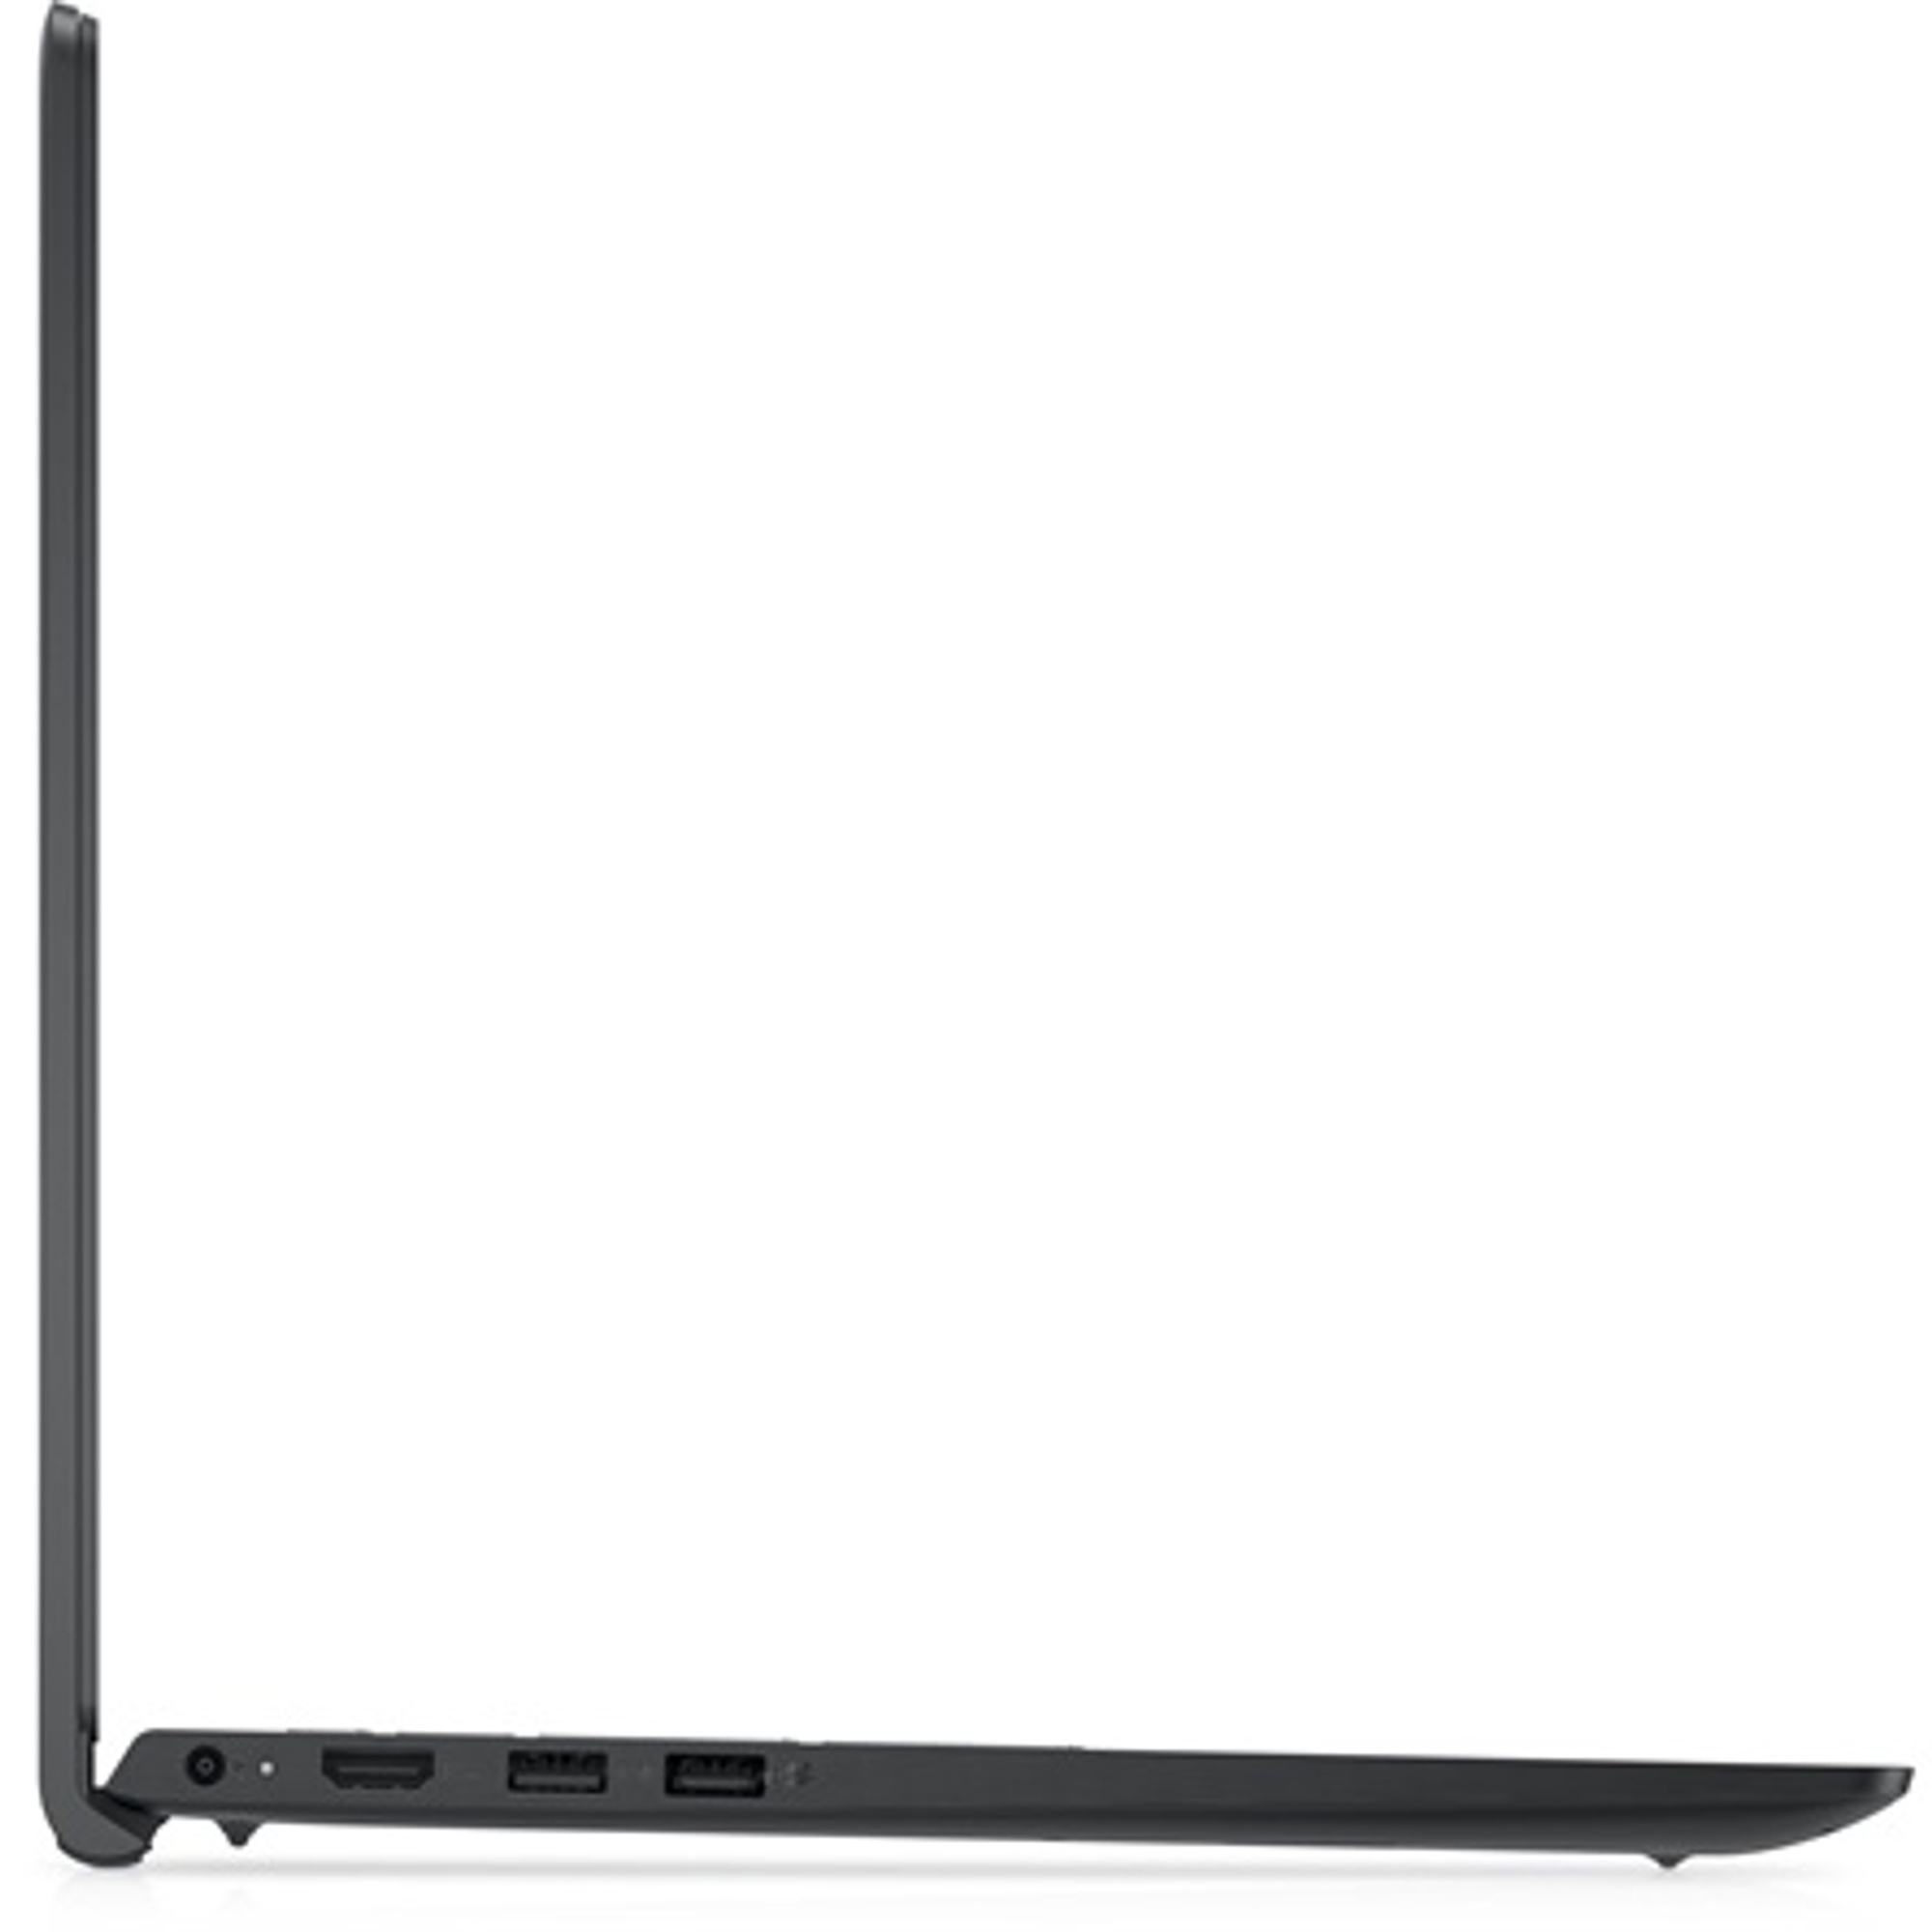 DELL V3520-20 Laptop / Notebook 3